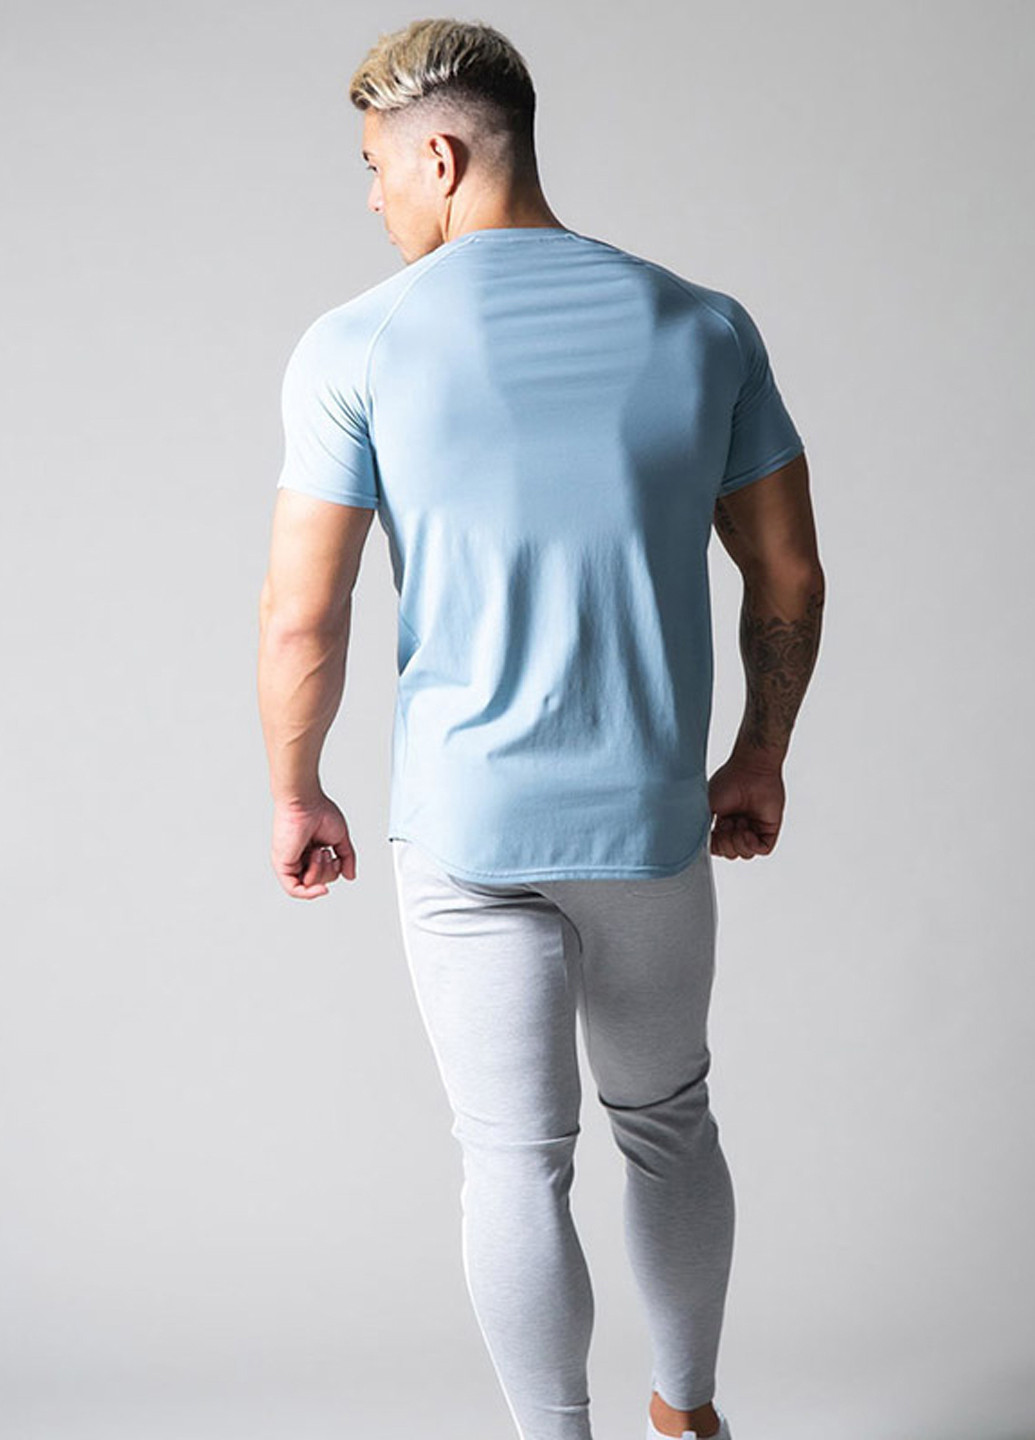 Голубая мужская голубая футболка с коротким рукавом Lyft